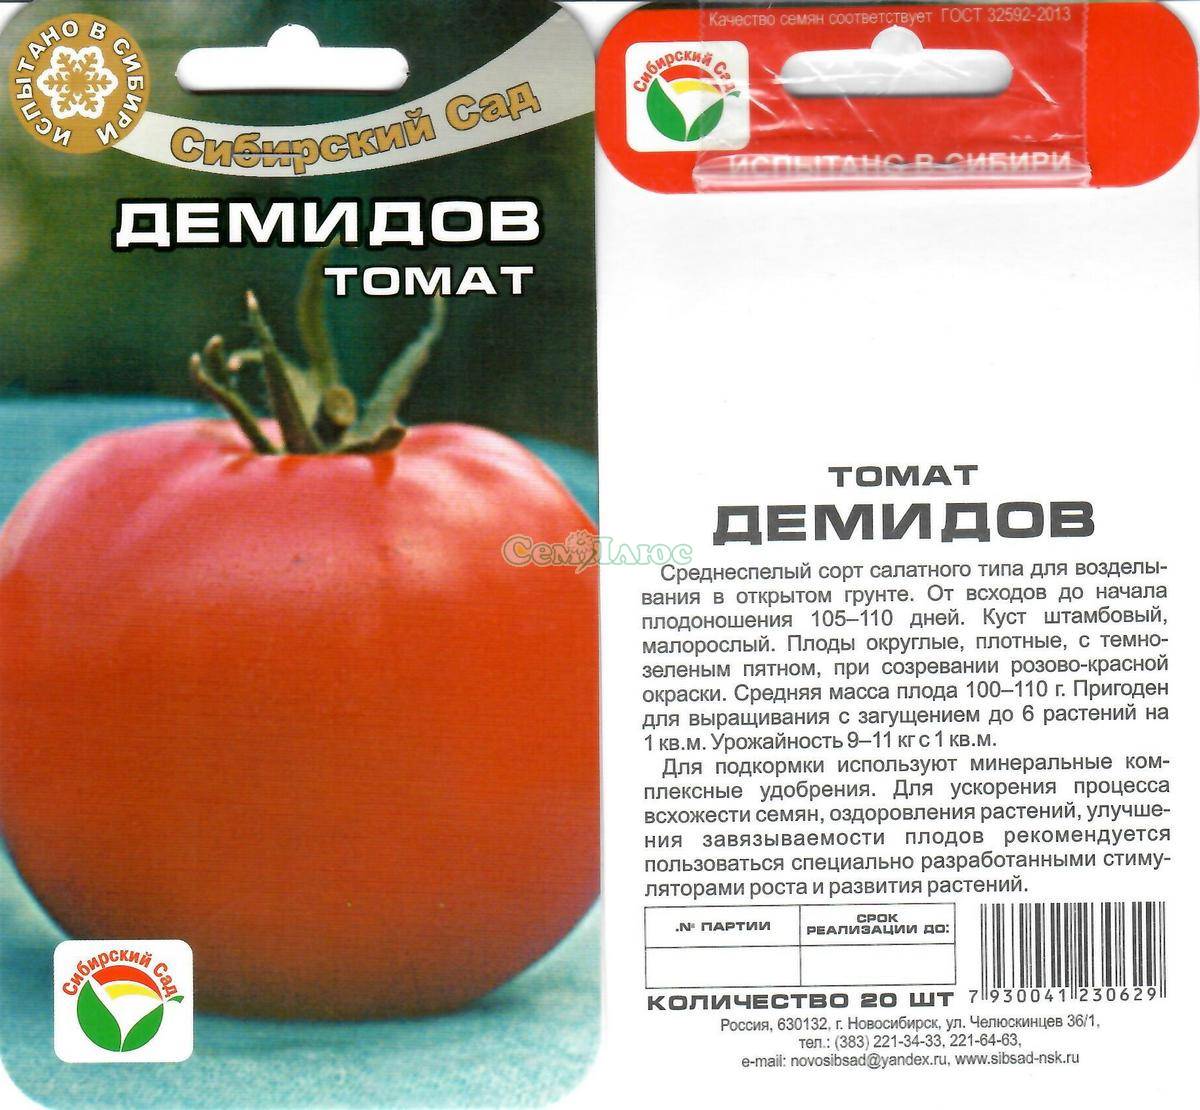 Томат падишах − характеристика и описание сорта, фото, урожайность, отзывы тех, кто сажал помидоры